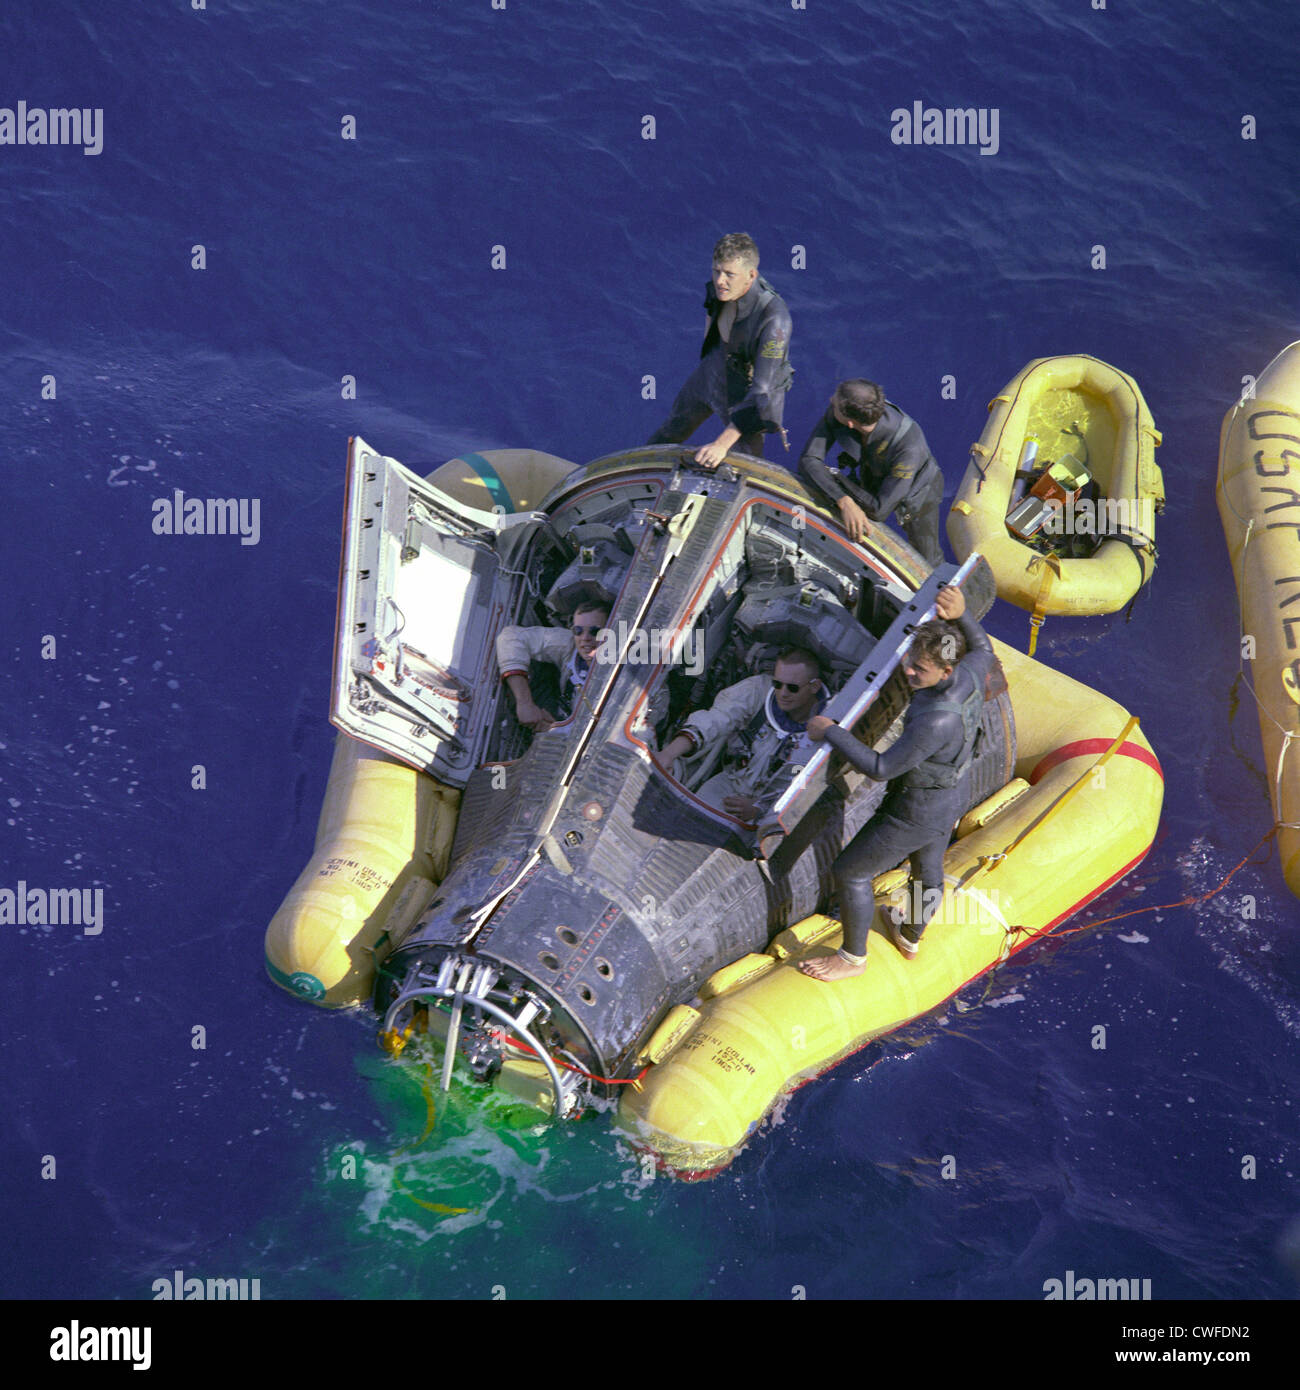 Astronauten-Neil A. Armstrong und David setzen Sie sich mit ihrem Raumschiff, die Luken zu öffnen, während Sie auf die Ankunft des Recovery-Schiff, die USS Leonard F. Mason nach dem erfolgreichen Abschluss ihrer Mission Gemini VIII 16. März 1966. Die Draufsicht zeigt das Raumschiff Gemini 8 mit dem gelben Flotation Kragen angebracht, um das Raumschiff in den choppy Meeren zu stabilisieren. Die grüne Markierung Farbstoff ist unübersehbar aus der Luft und dient als eine Suche nach Hilfe. Stichwörter Gemini 8 Gemini VIII Neil Armstrong David Scott Dave Scott Splashdown Erholung AF Pararescuemen Eldrige Neal Larry Huyett Glenn Moore Le Stockfoto